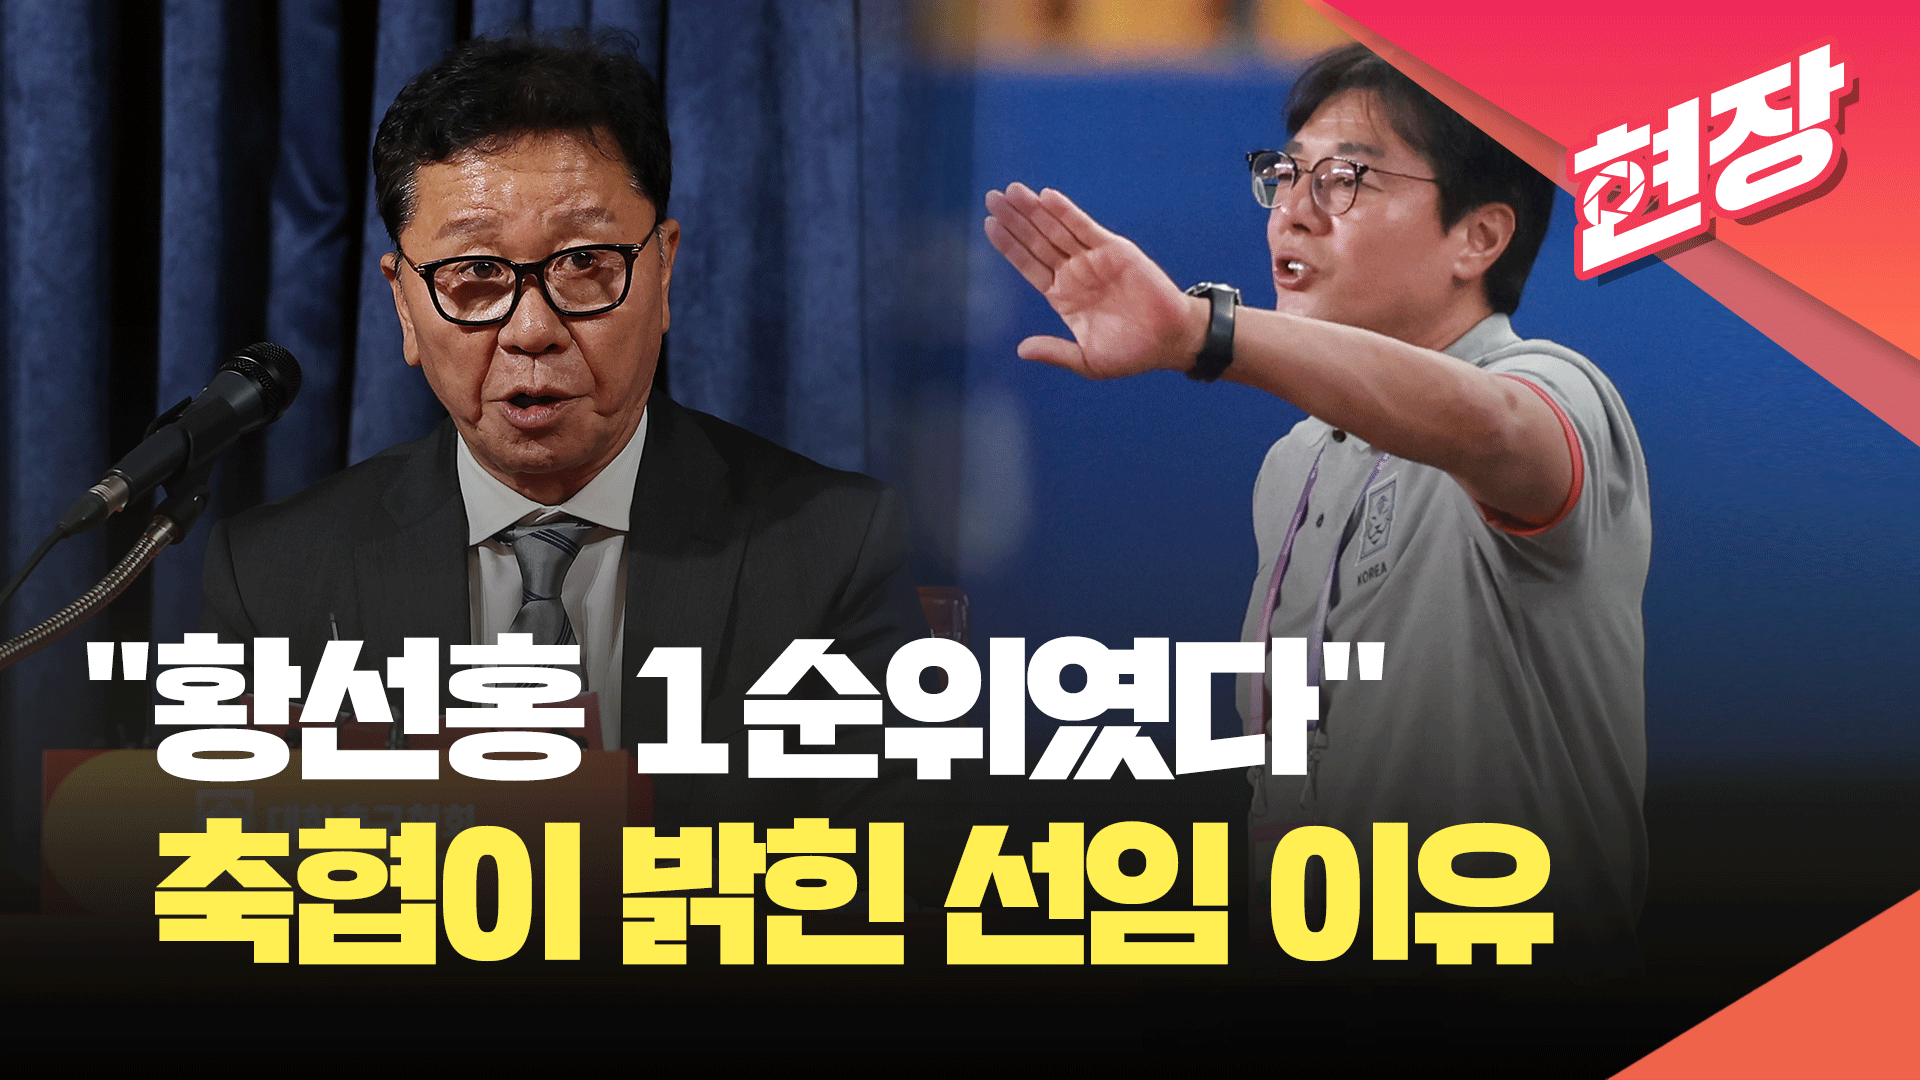 [영상] “황선홍 1순위였다”…<br>축협이 밝힌 임시 감독 선임 이유